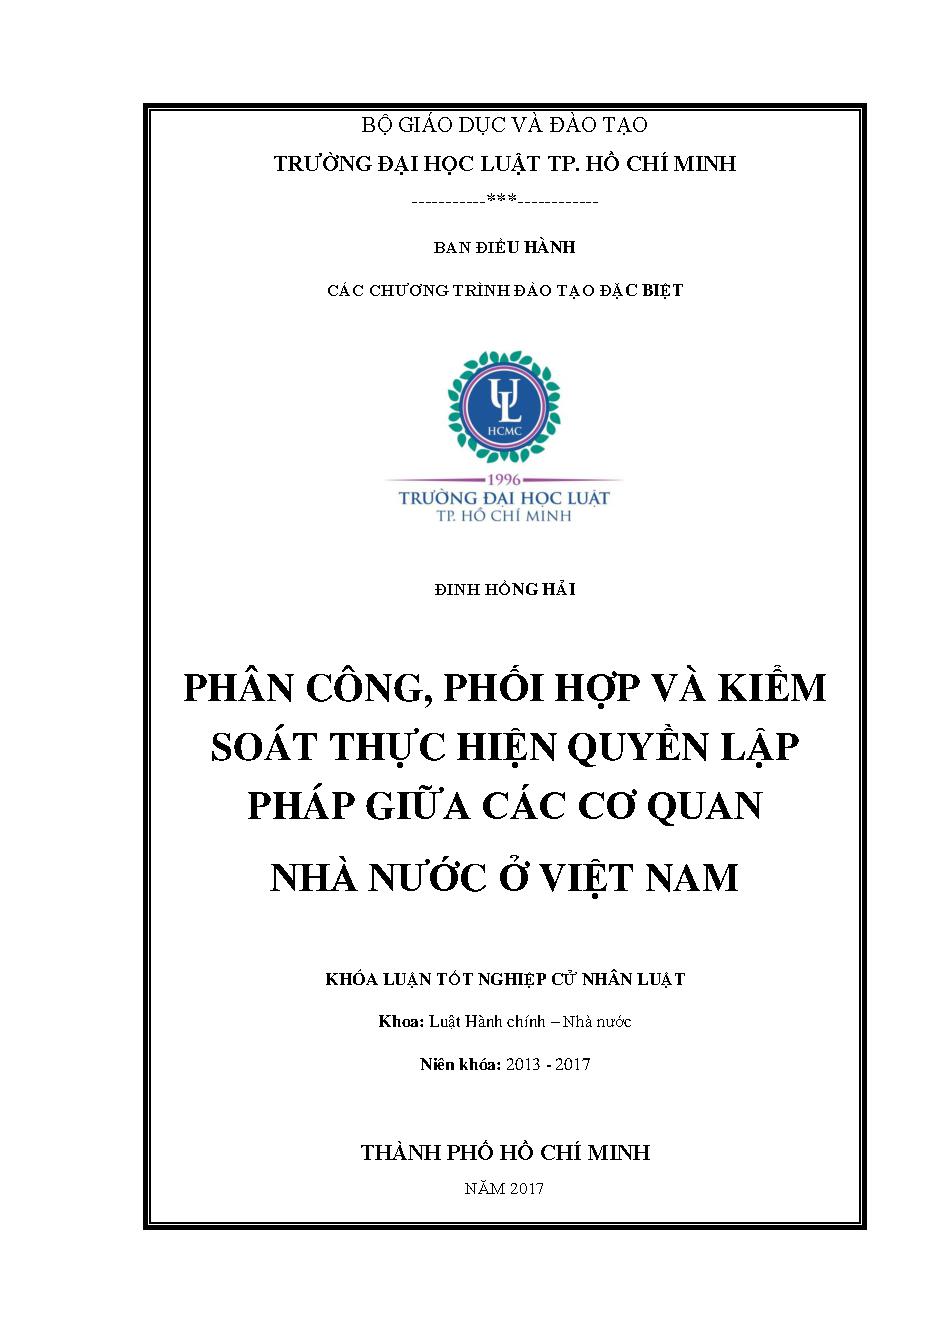 Phân công, phối hợp và kiểm soát thực hiện quyền lập pháp giữa các cơ quan nhà nước ở Việt Nam